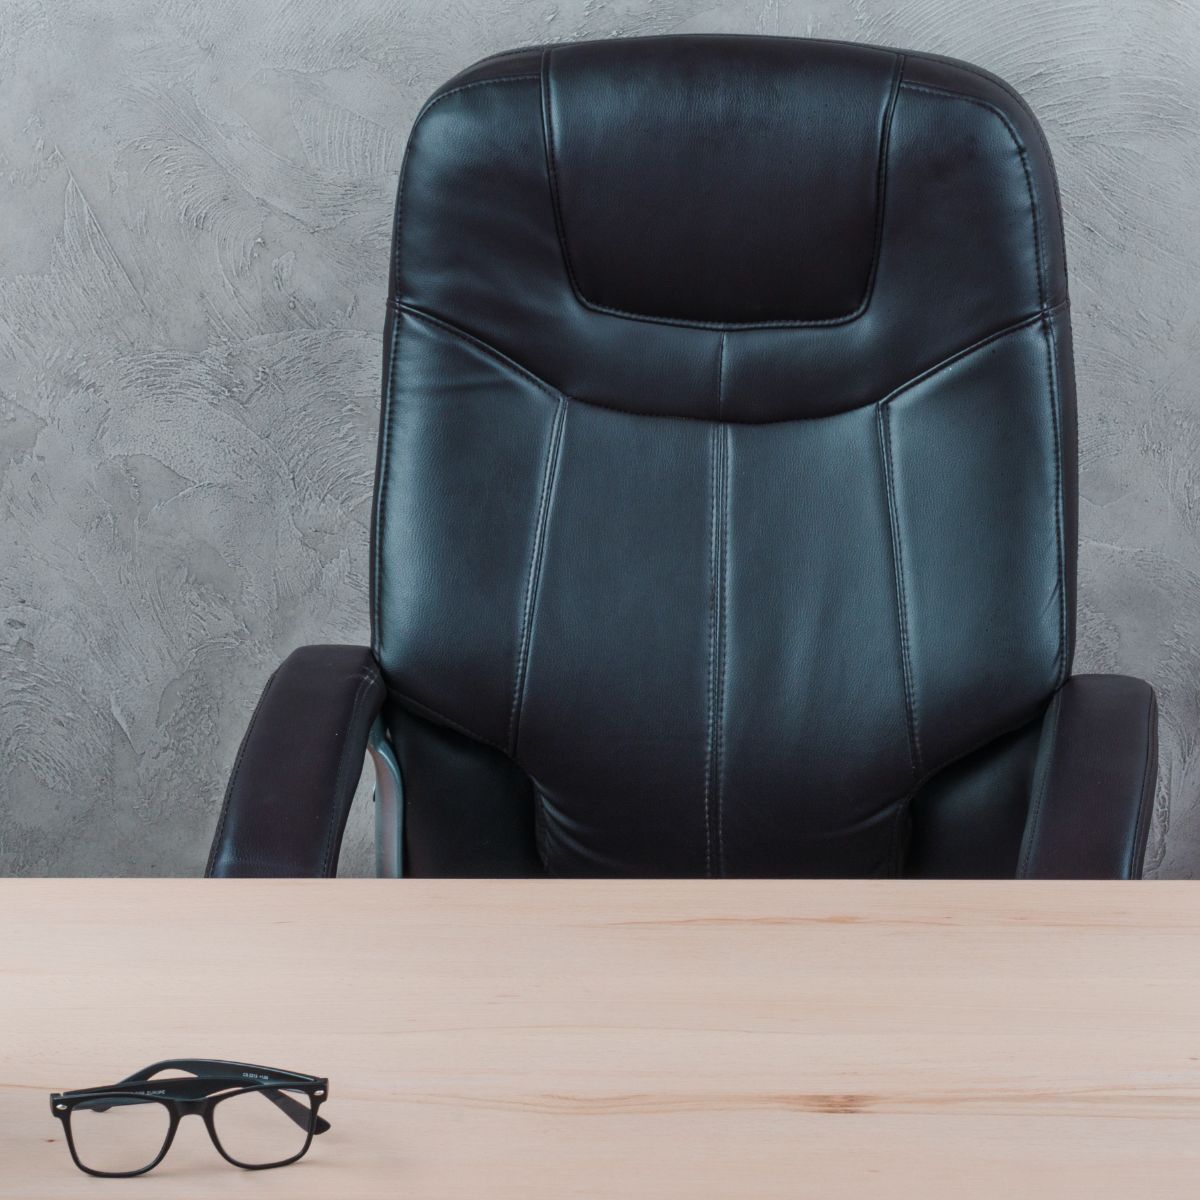 Преимущества инвестирования в высококачественное офисное кресло. Почему не рекомендуется экономить на офисном кресле